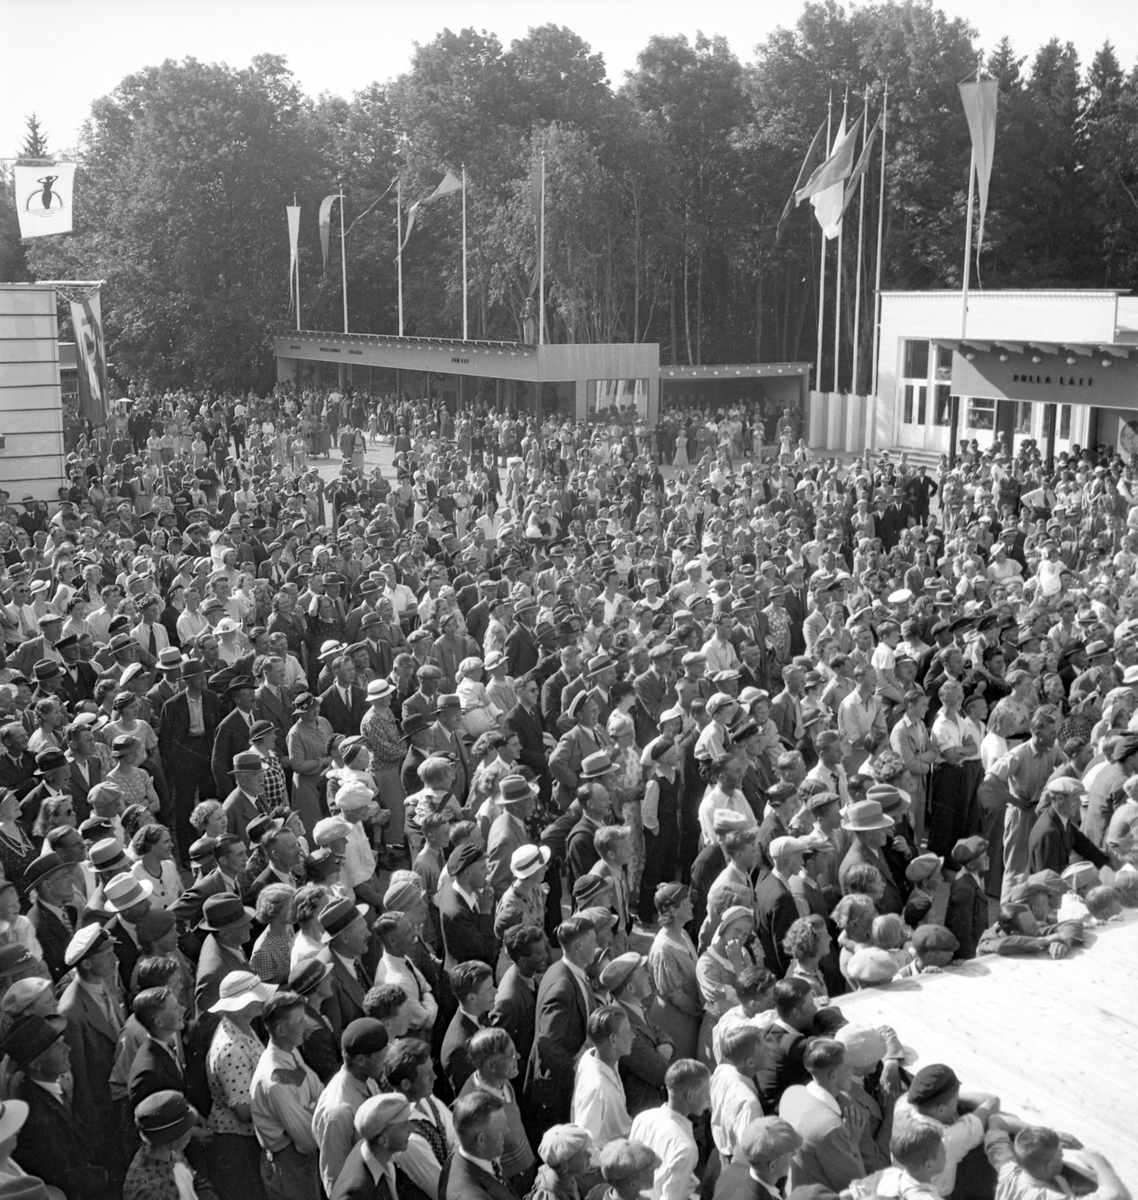 Furuviksparken invigdes pingstdagen 1936.

Nöjesfältet, badplatsen Sandvik och djurparken gjordes iordning.

Mycket folk vid scenen






